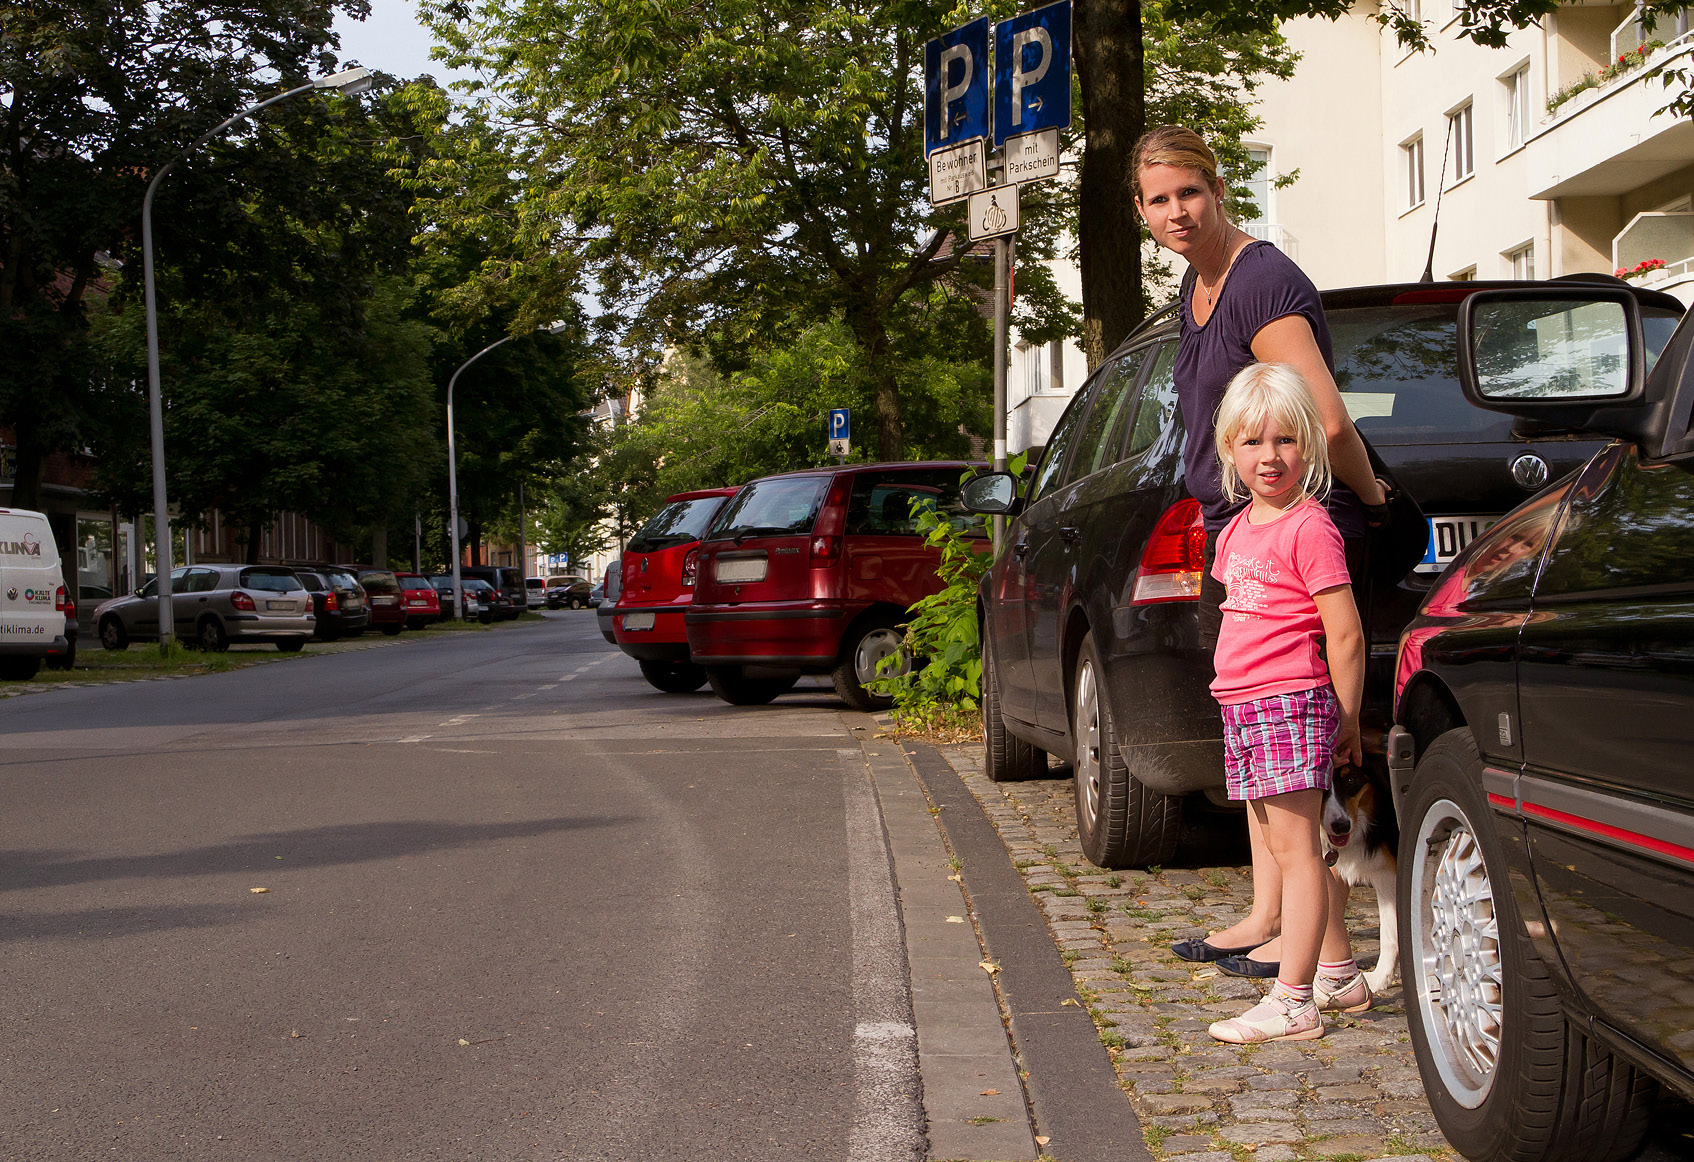 Ist eine Straßenüberquerung ohne Ampelanlage notwendig, halten Sie mit Ihrem Kind an der Bordsteinkante an, überzeugen sich mit den Blicken links-rechts-links, dass keine Fahrzeuge